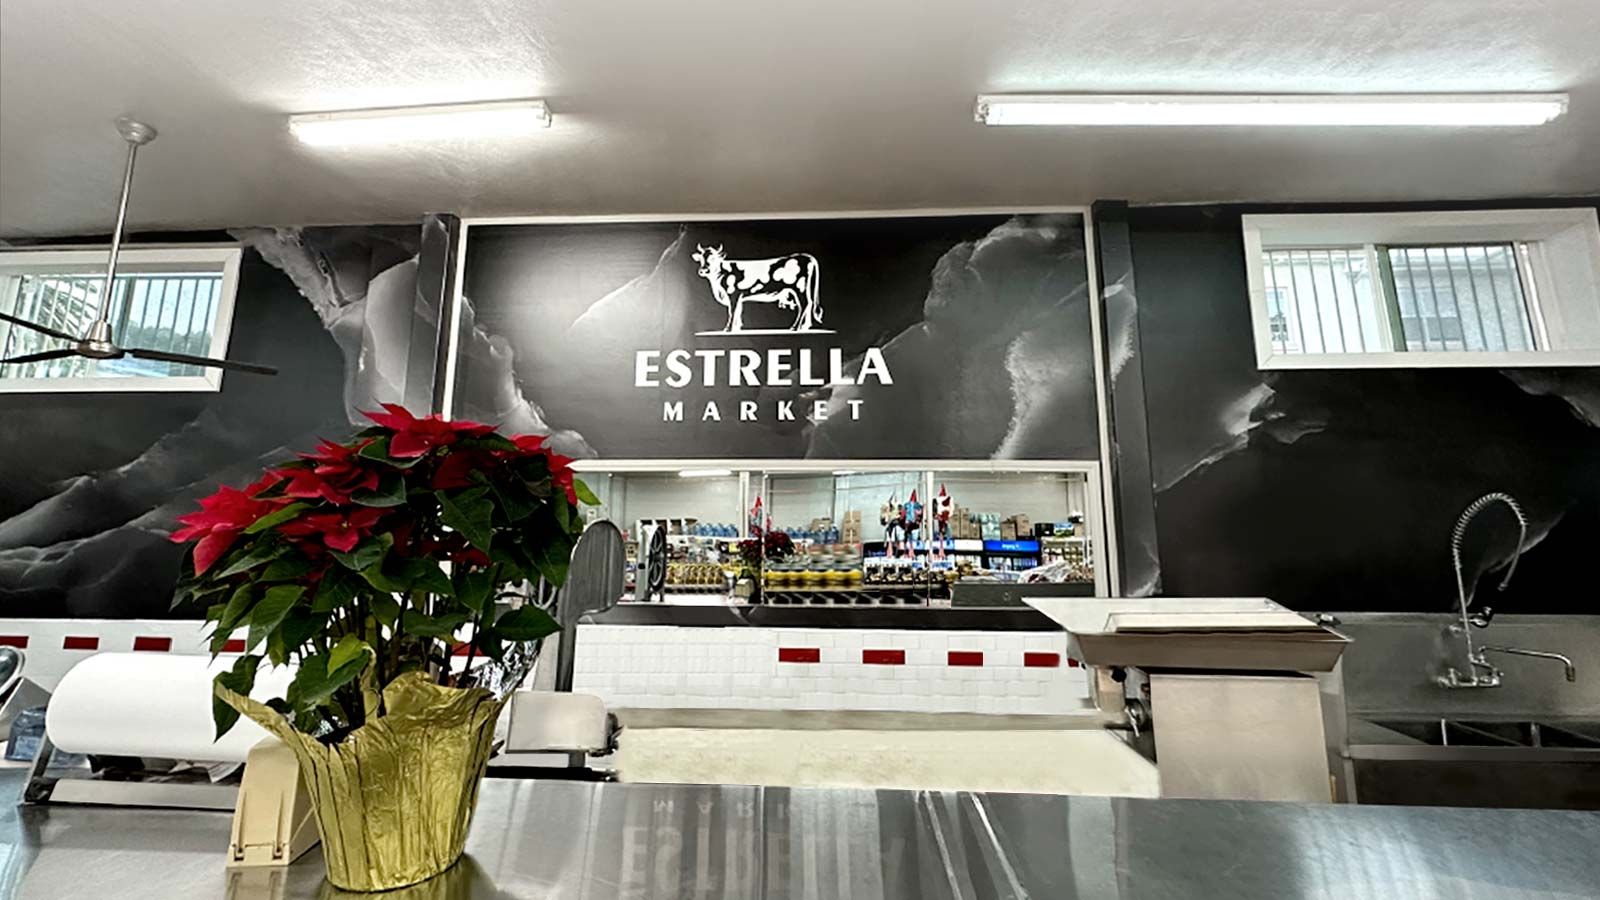 Estrella Market wall decals applied indoors